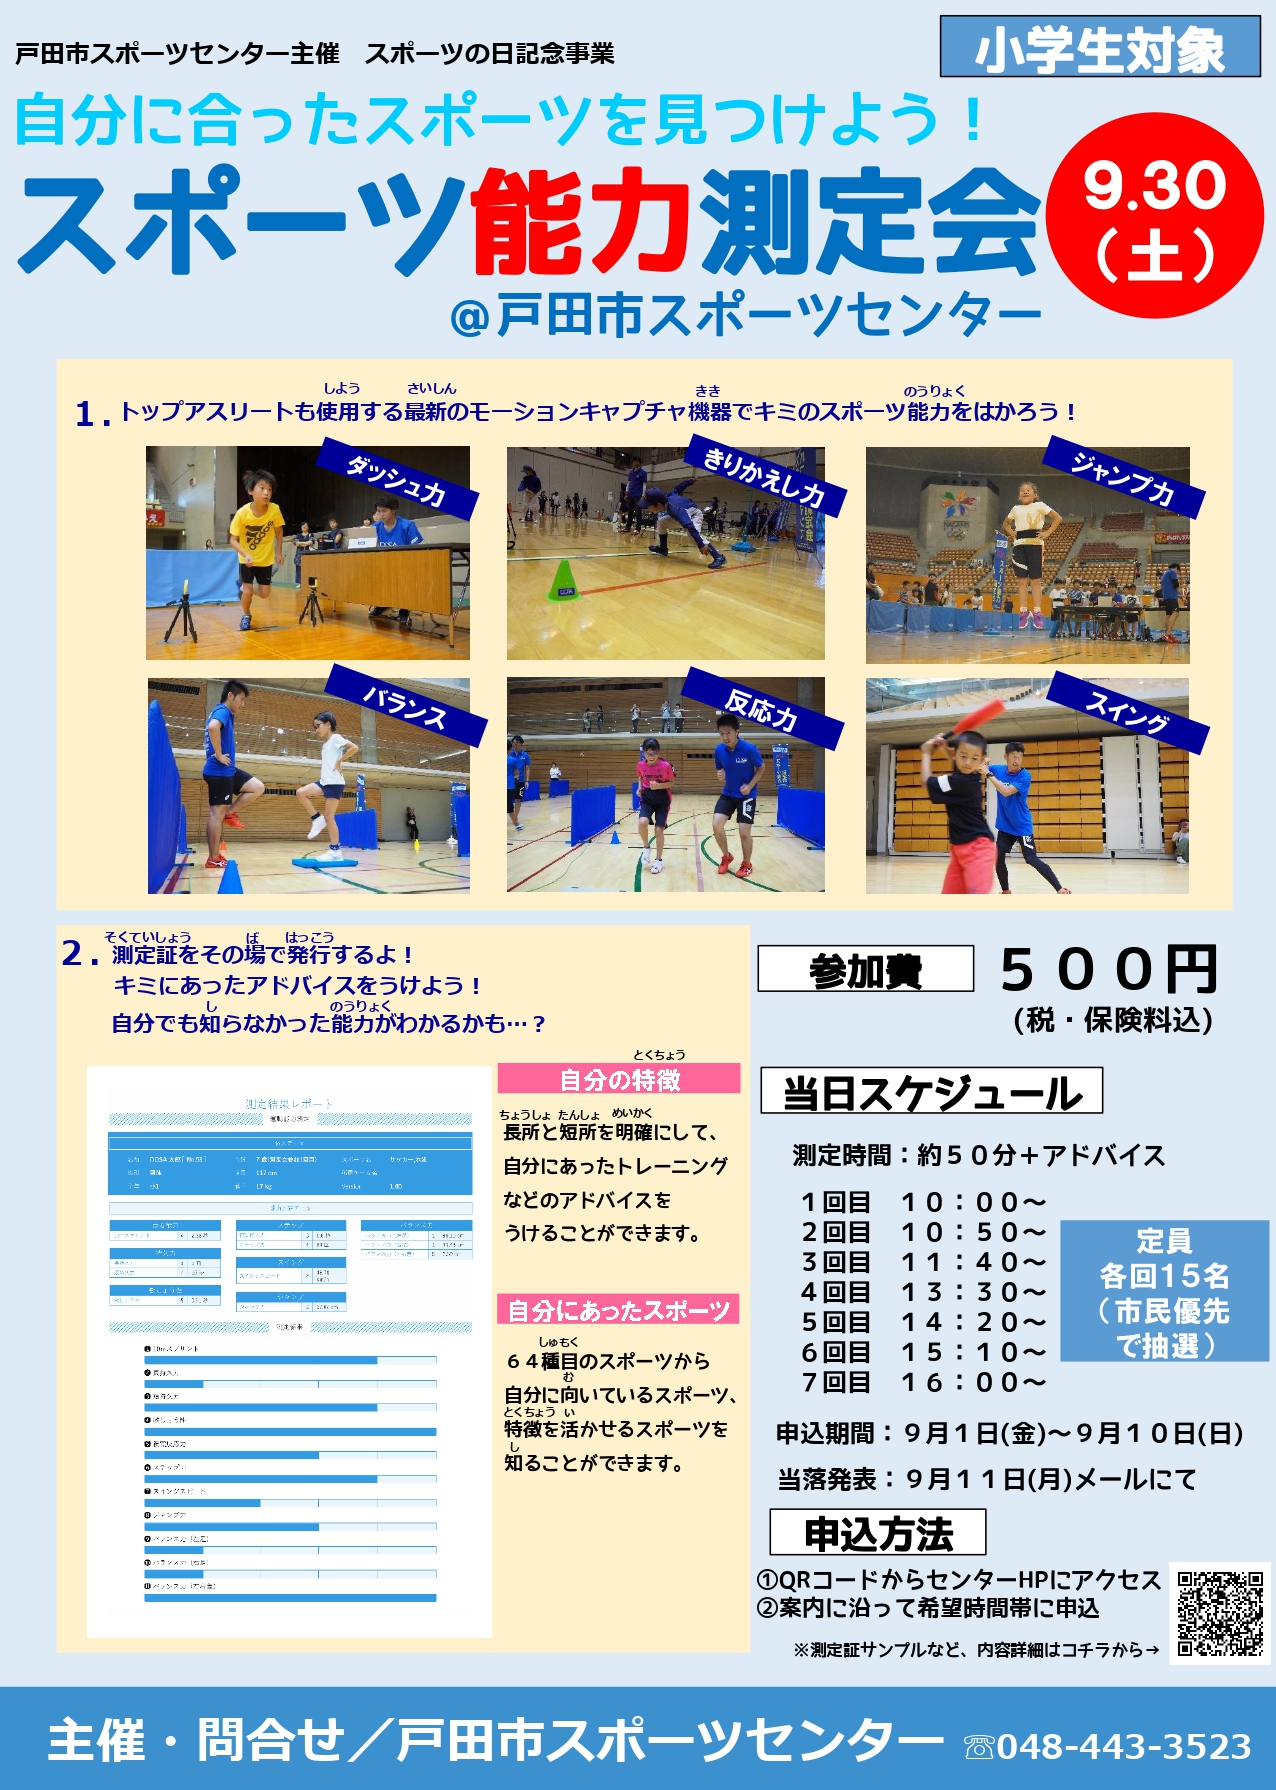 2023/9/30 スポーツ能力測定会 in 戸田市スポーツセンターを開催します。